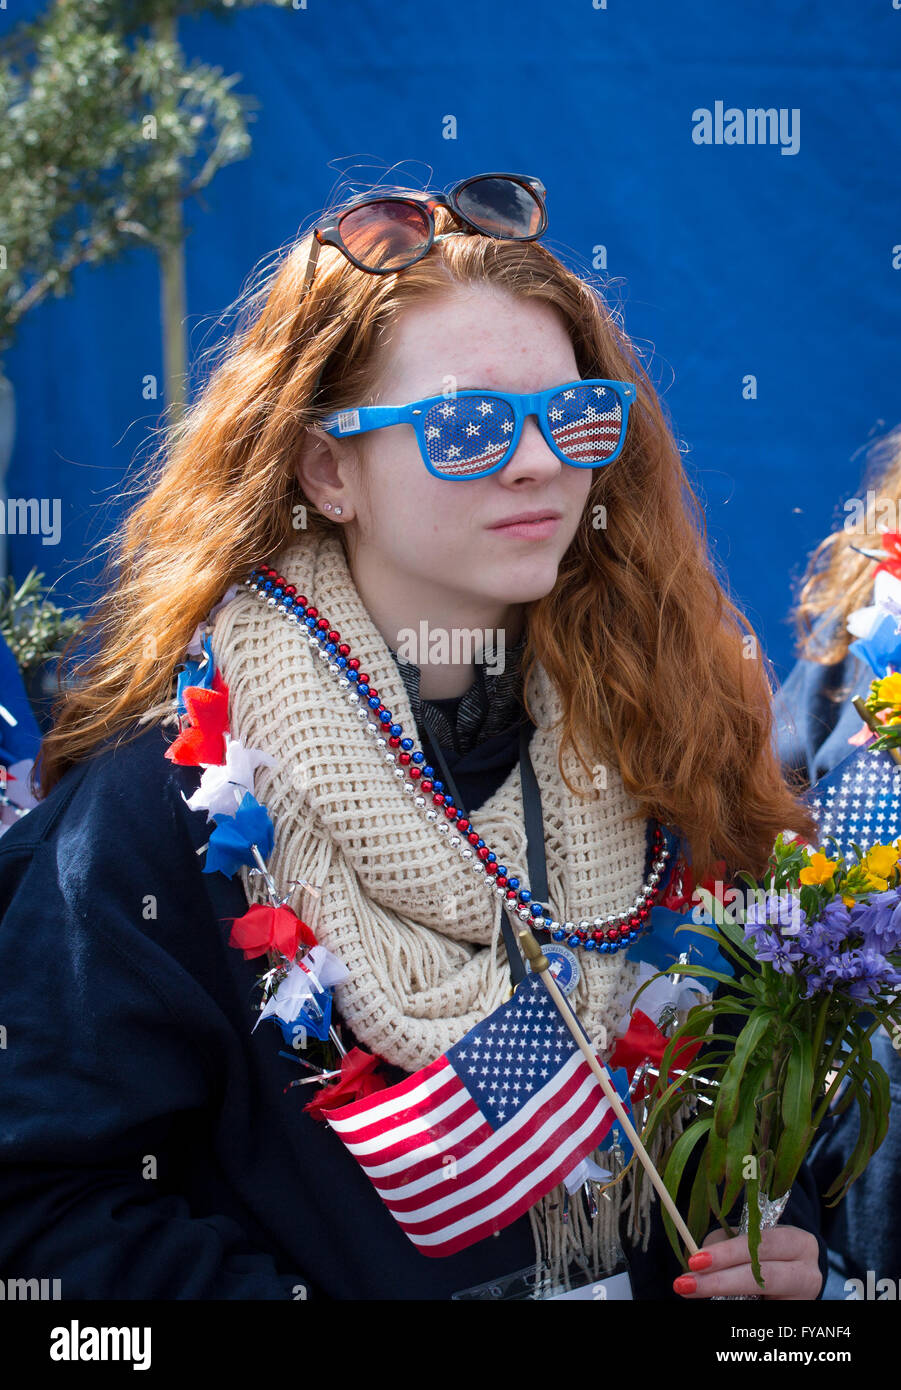 Una joven estadounidense vestida de estrellas y rayas parafernalia Foto de stock